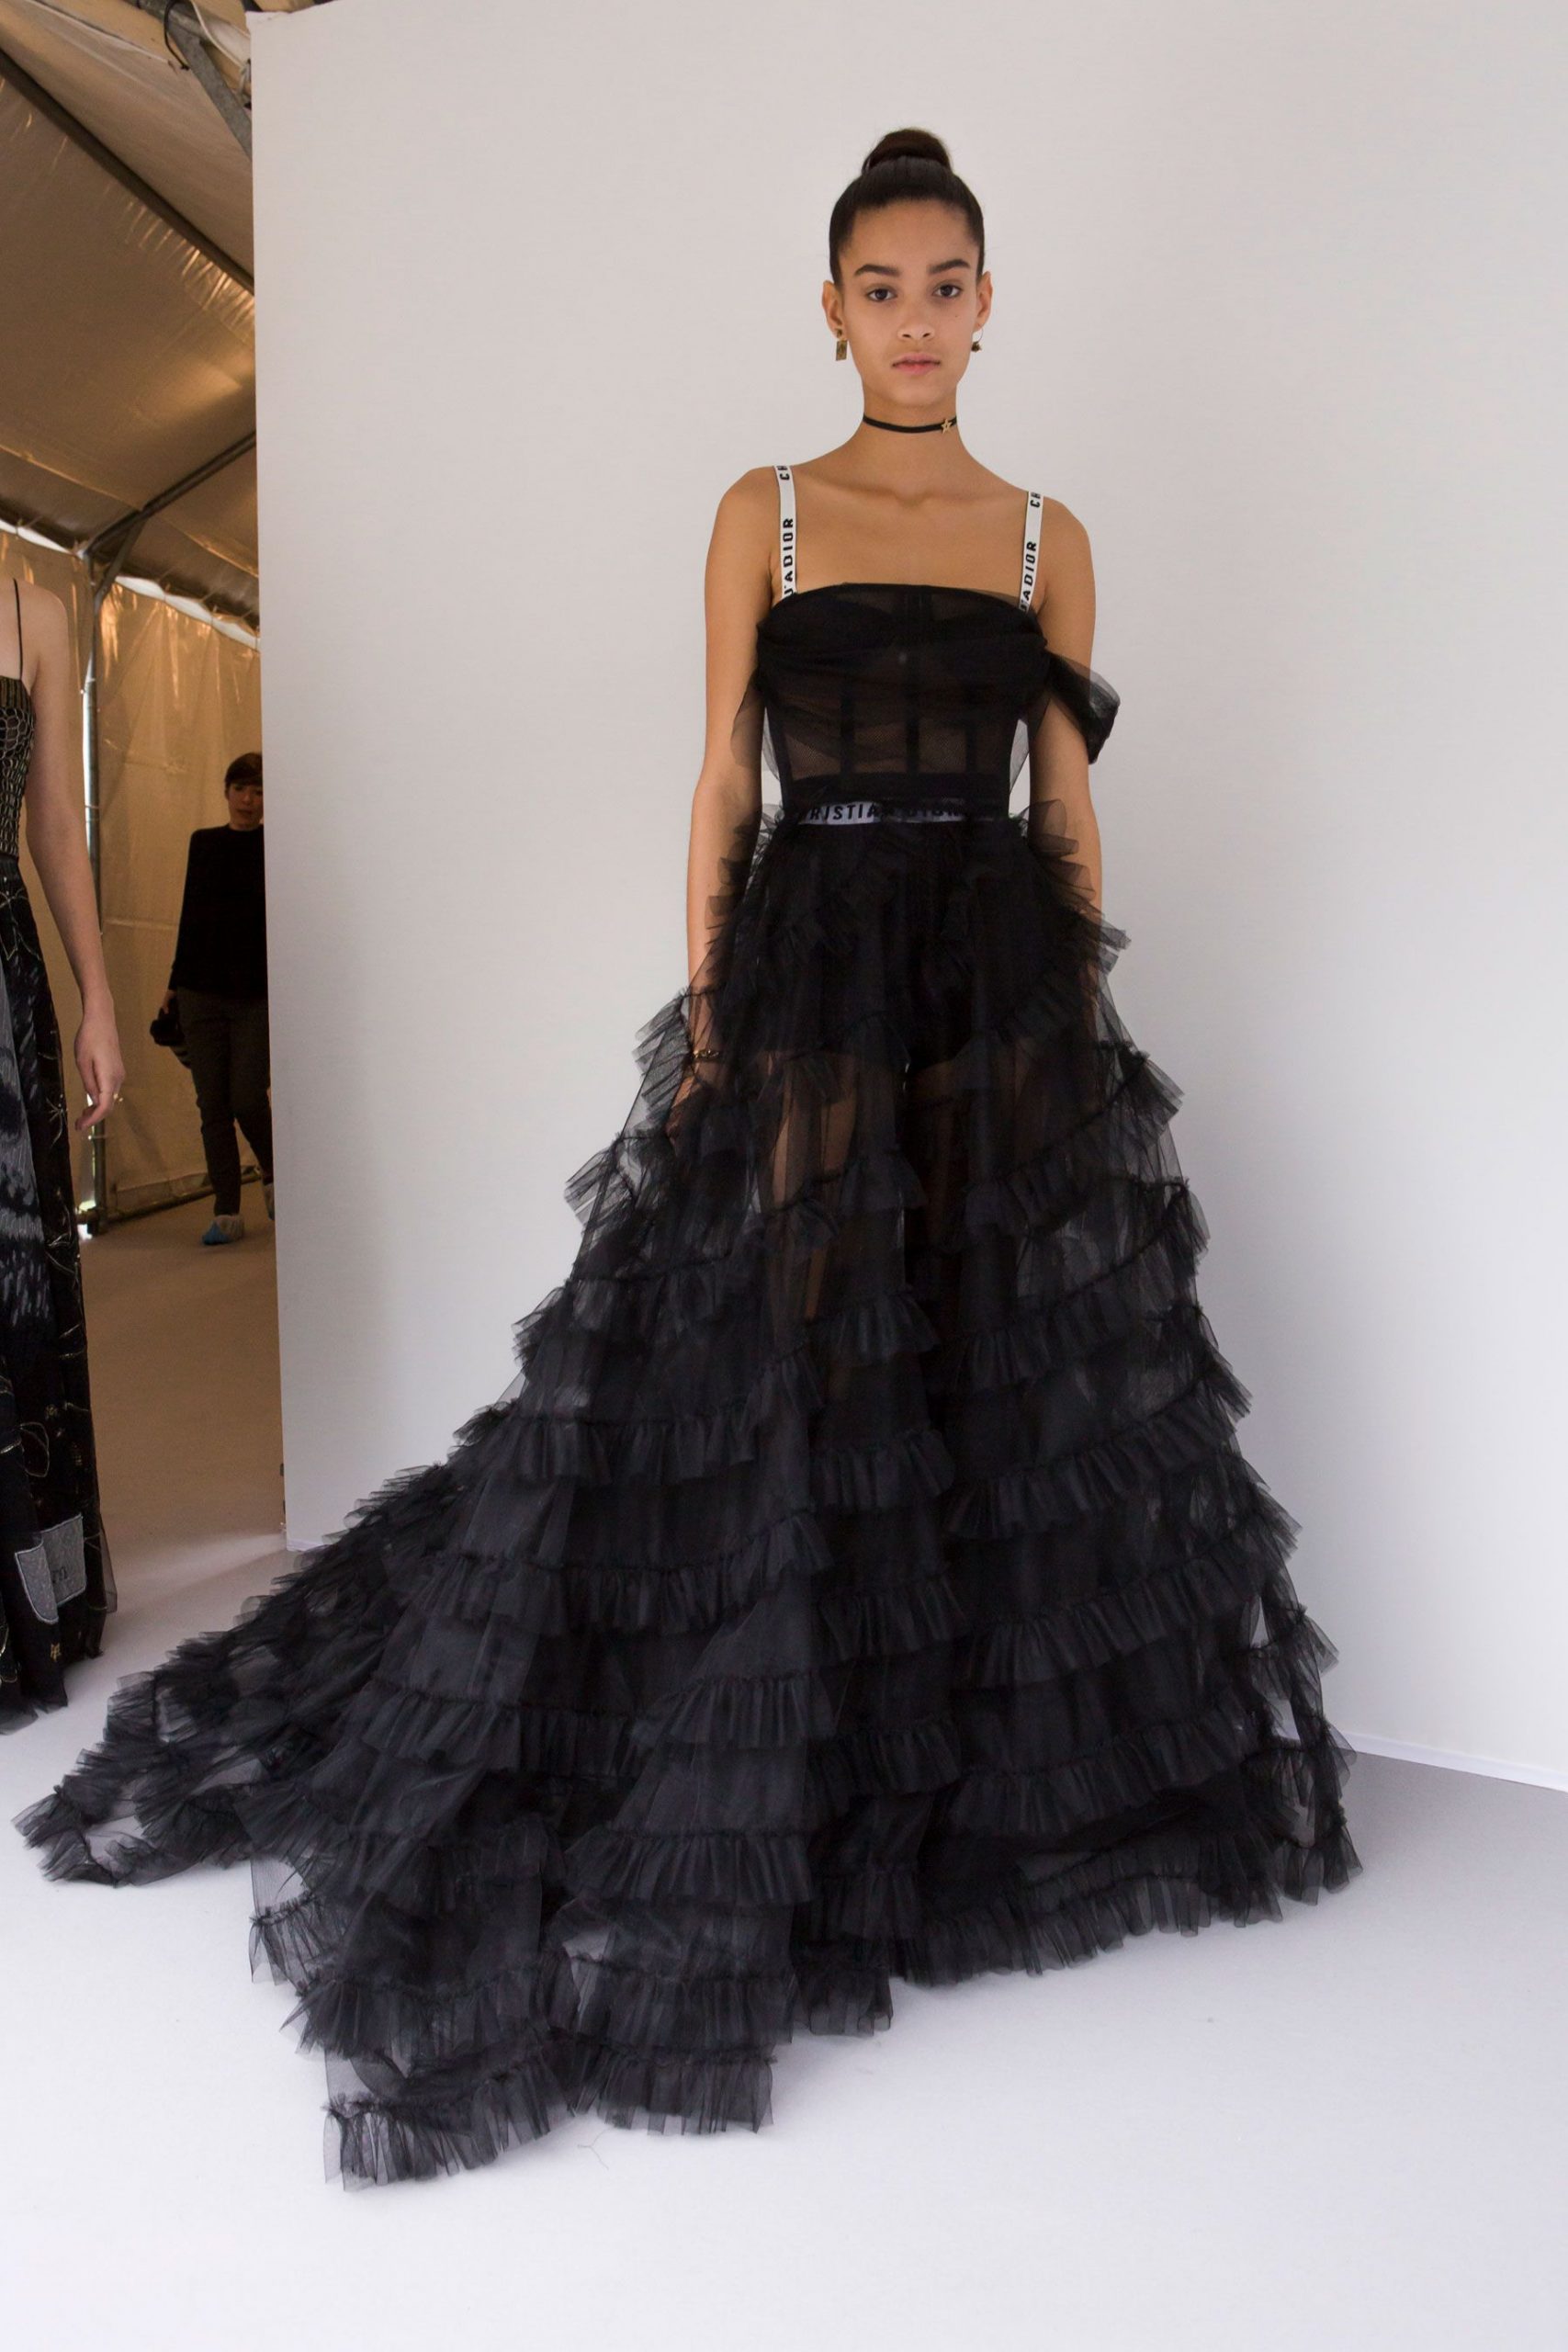 Christian Dior Spring 2017 Paris Backstage  Dresses